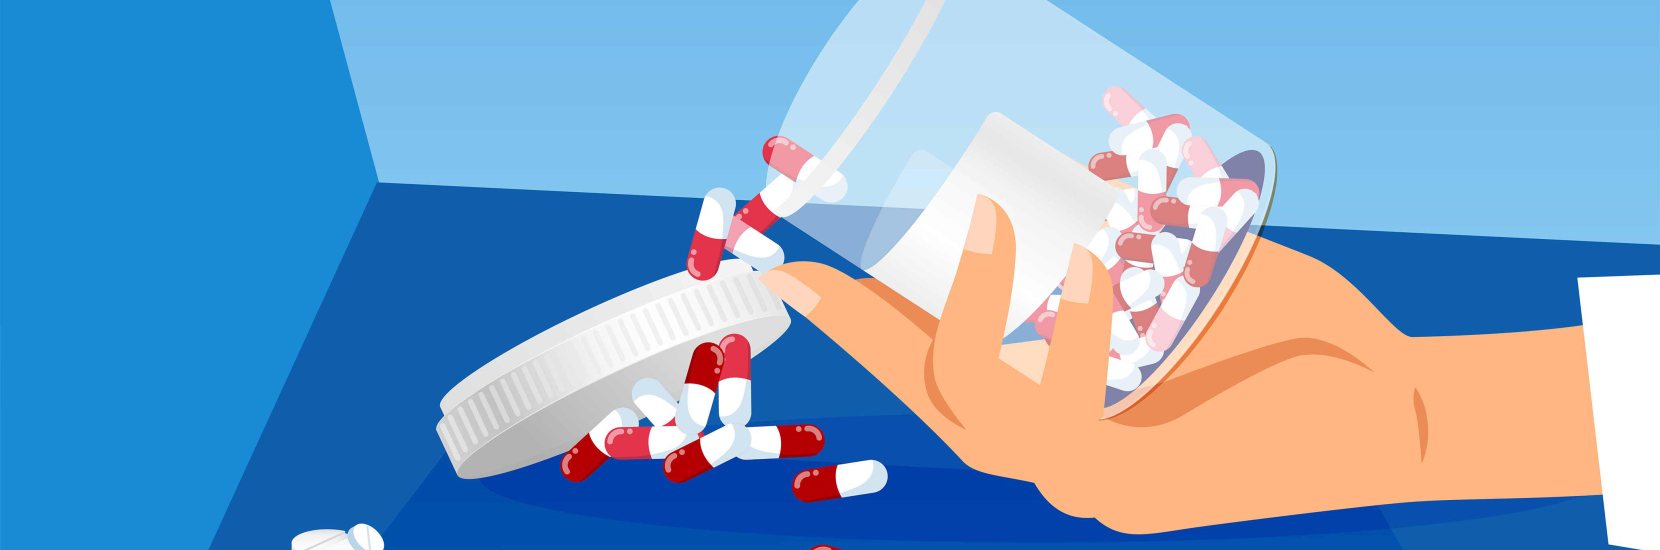 Le bon usage des opioïdes pour la prise en charge de la douleur